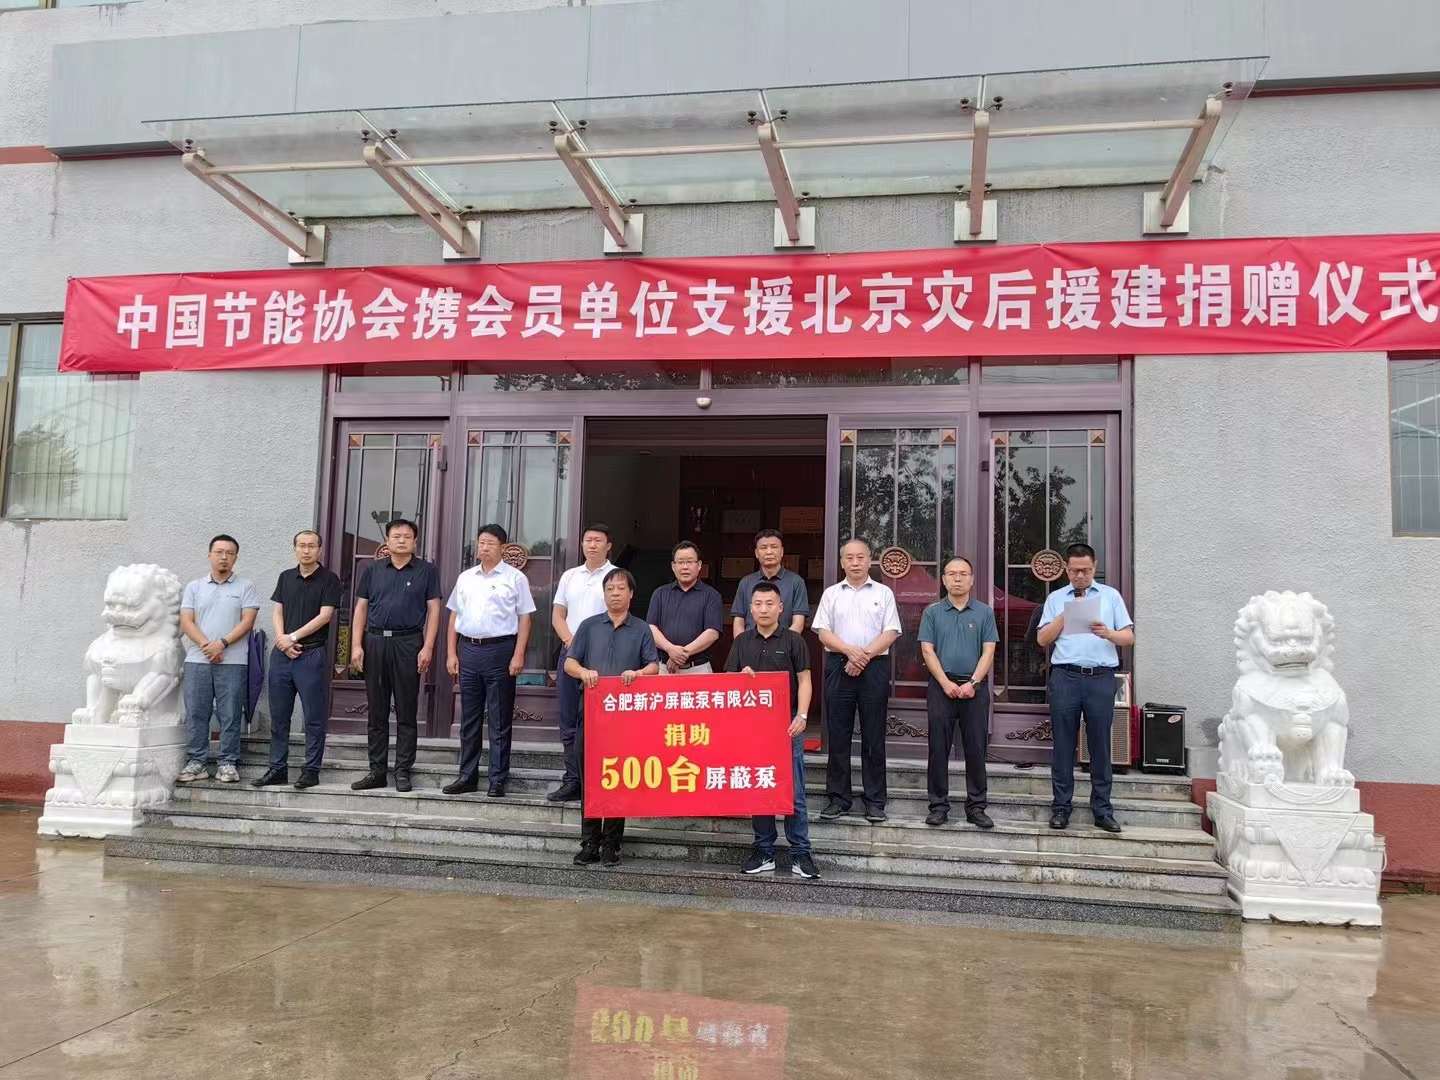 Shinhoo beteiligt sich aktiv. China Energy Conservation Association organisiert „Unterstützung der Spendenzeremonie für die Fluthilfe in Peking“
    